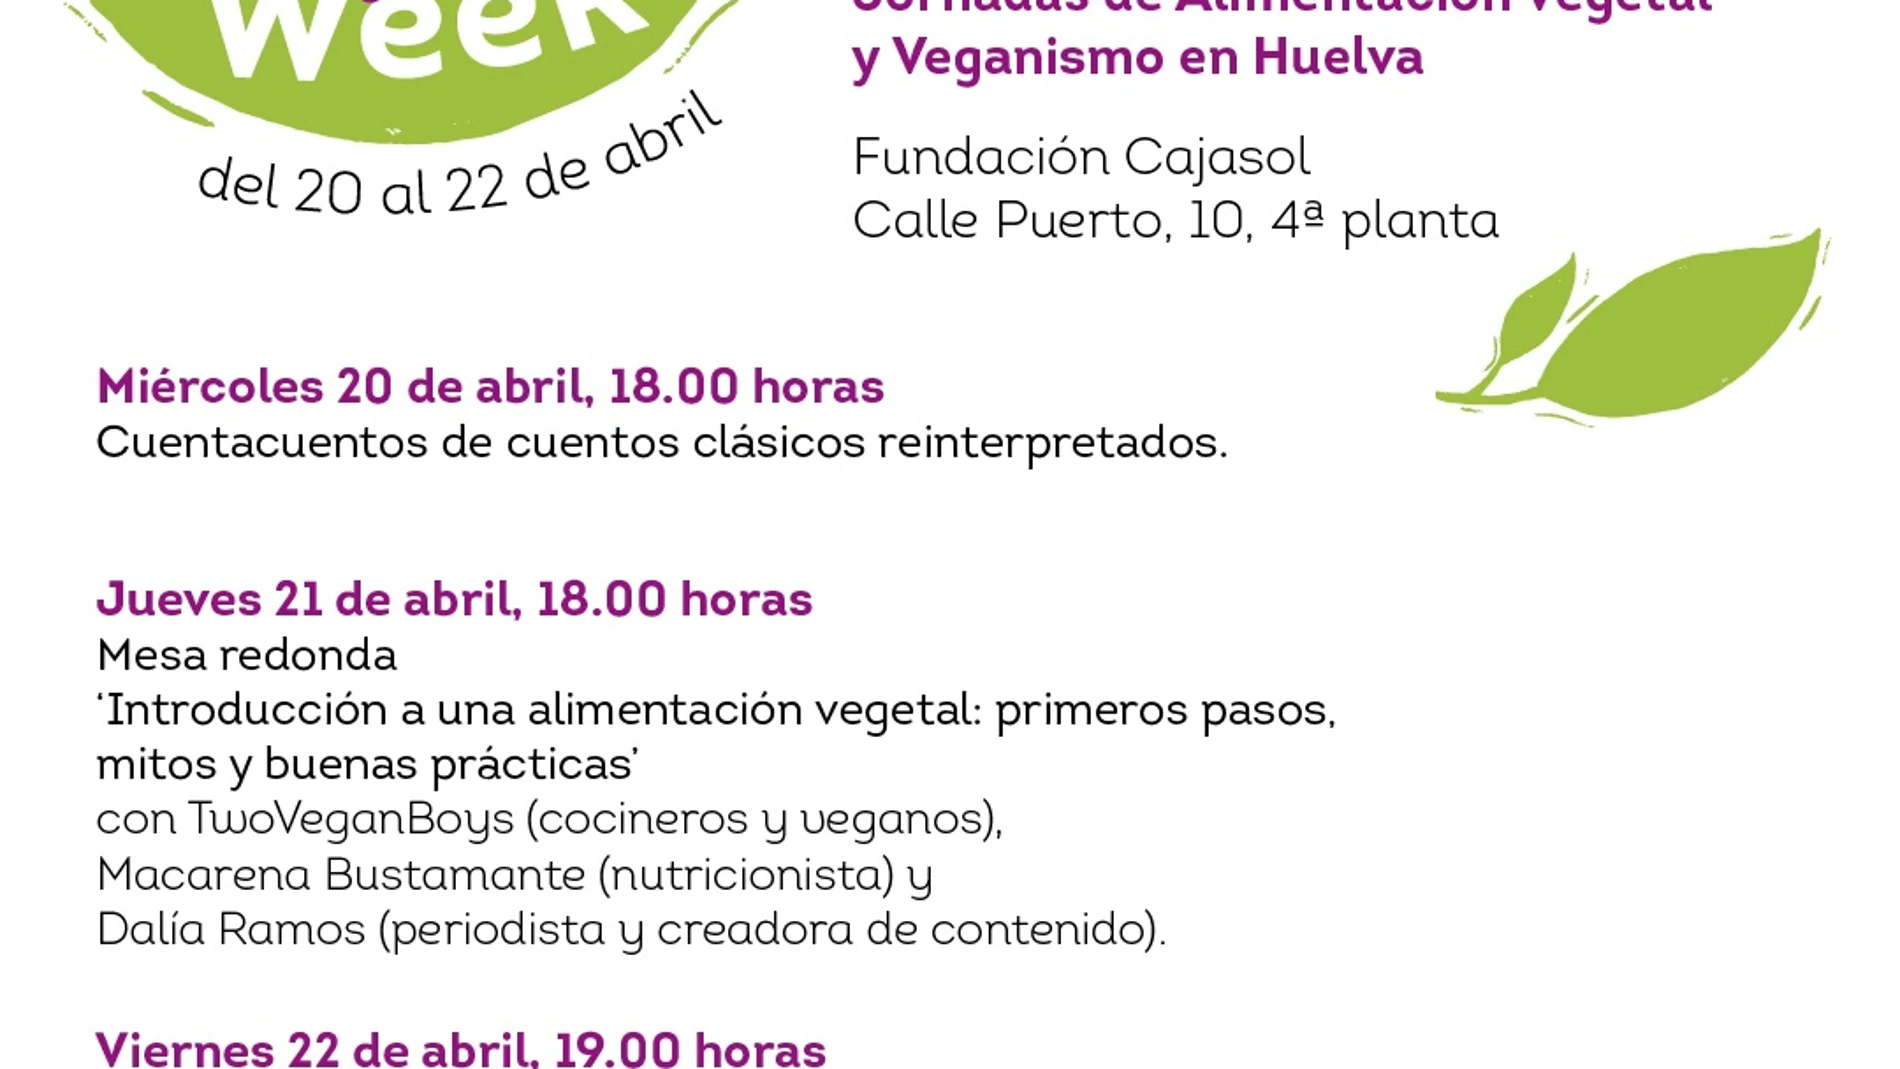 Cartel de la 'Veggie Week' de la Fundación Cajasol en Huelva